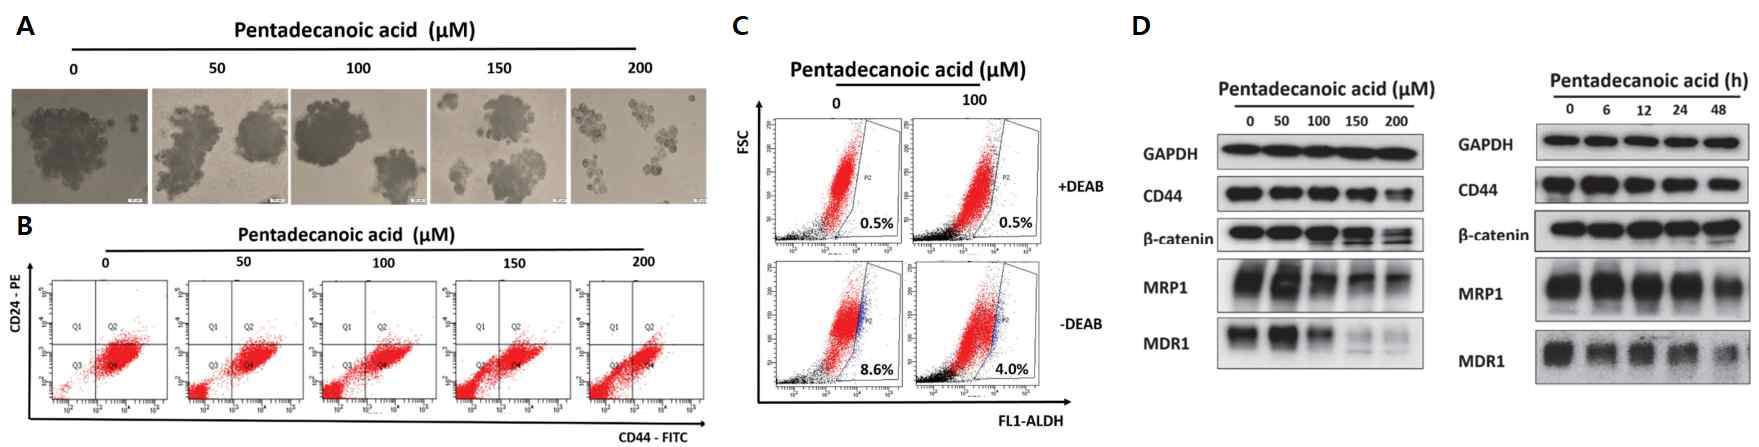 유방암줄기세포 MCF-7/SC에서의 Pentadecanoic acid에 대한 암줄기 특성 억제 효능